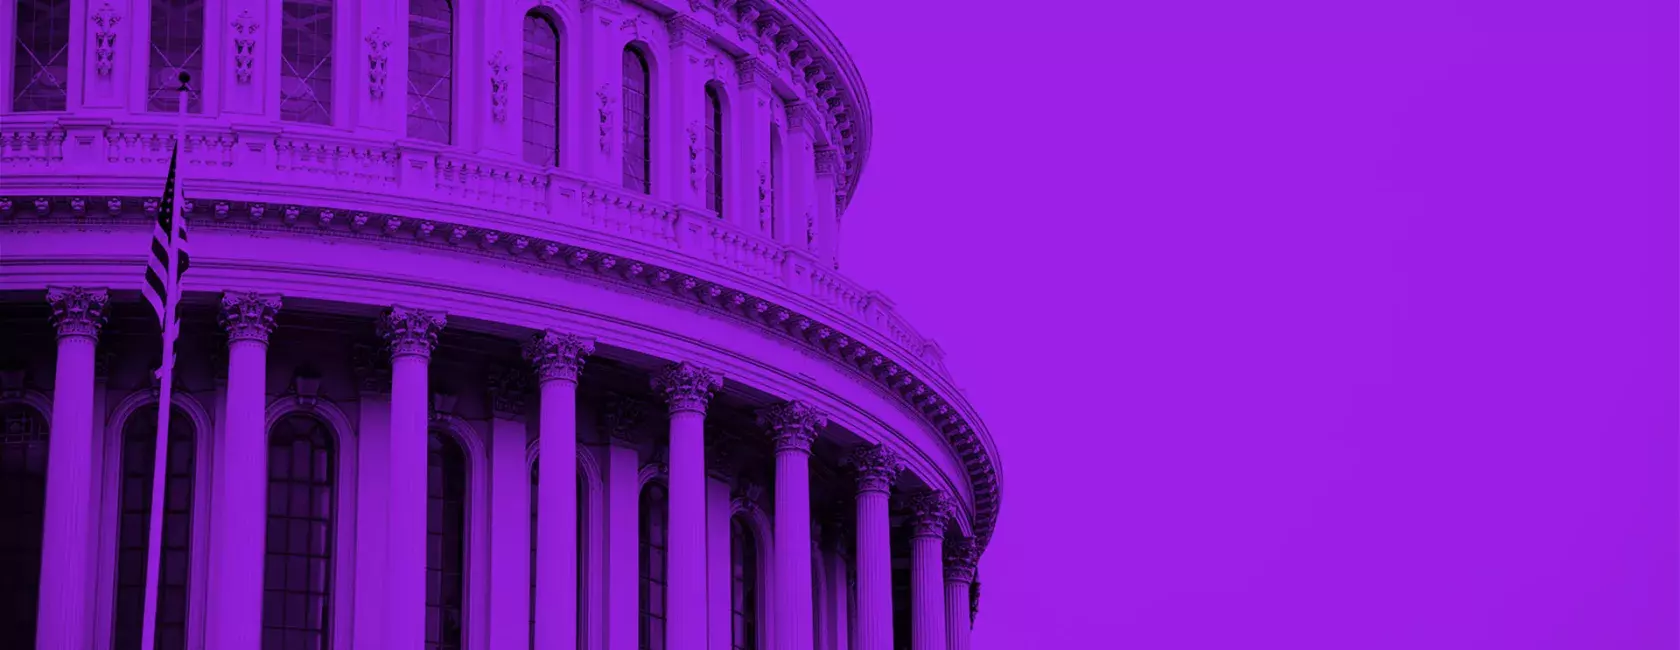 Purple Congress